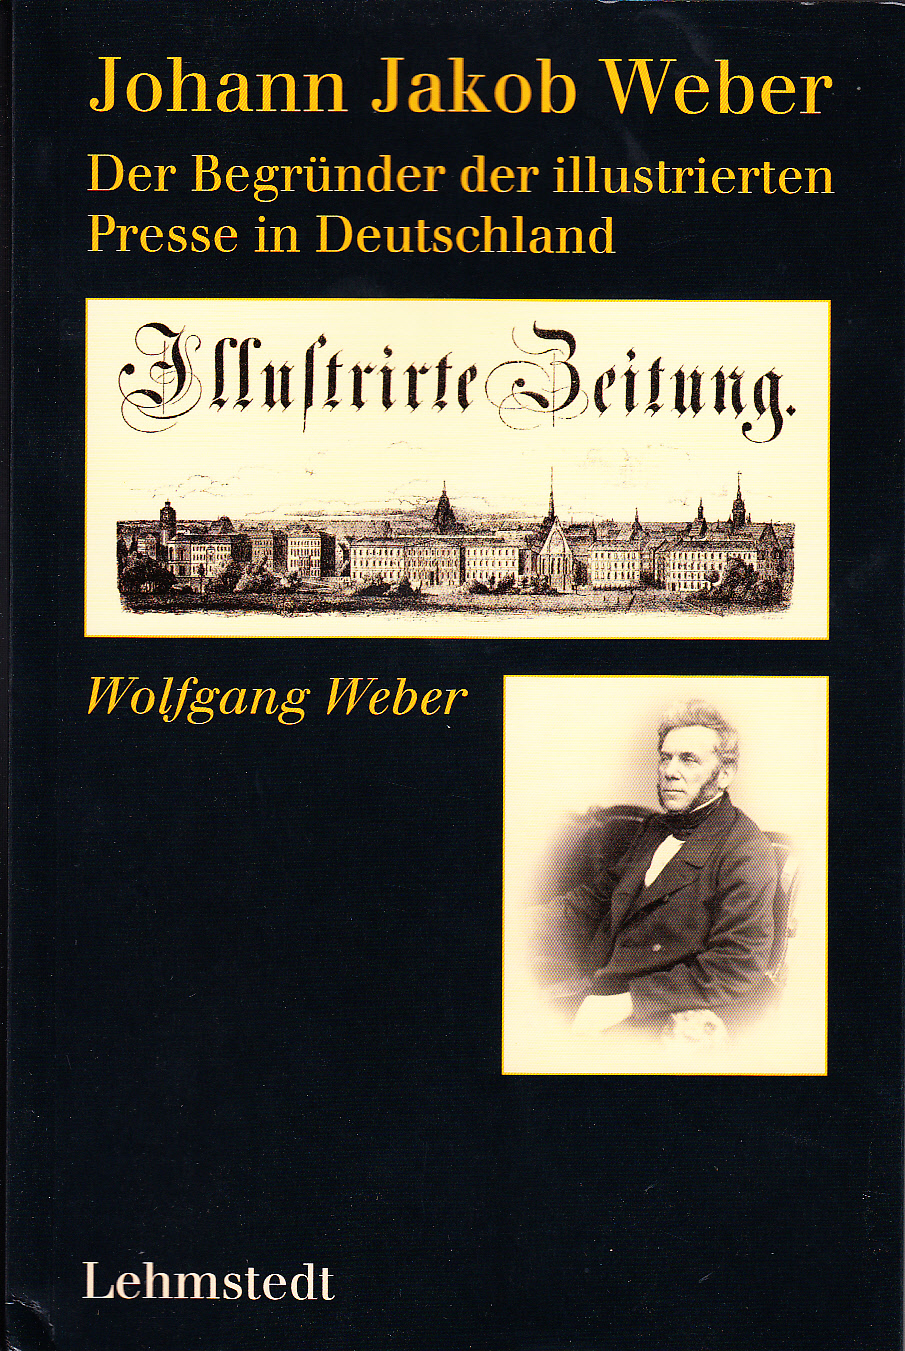 Johann Jakob Weber : Der Begründer der illustrierten Presse in Deutschland.